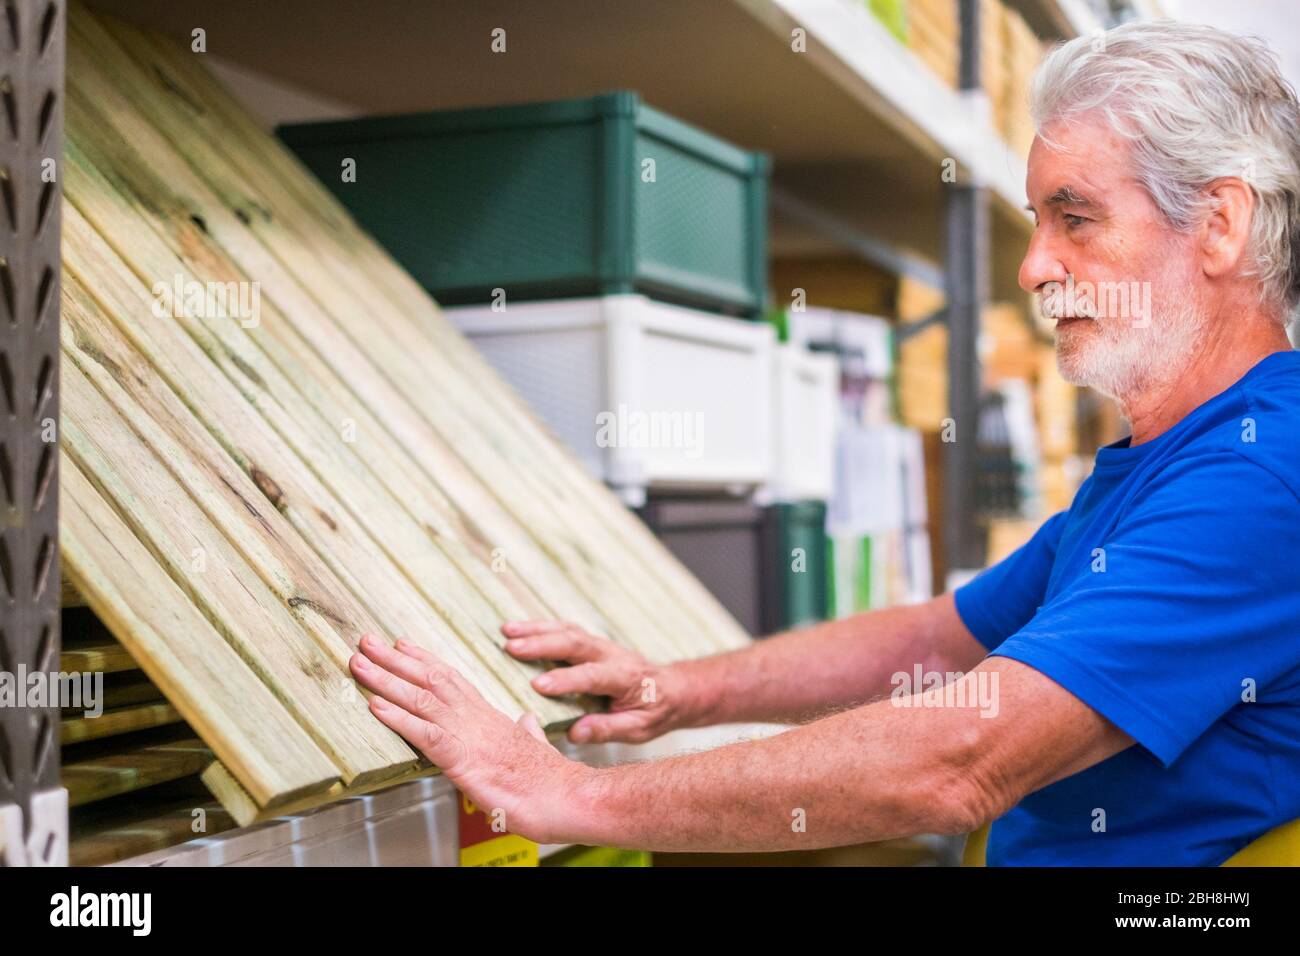 Uomo caucasico scegliere articoli in negozio di ferramenta - pavimento in legno come pallet per costruire mobili o terreno a casa - concetto di business per le persone in pensione come fare attività Foto Stock